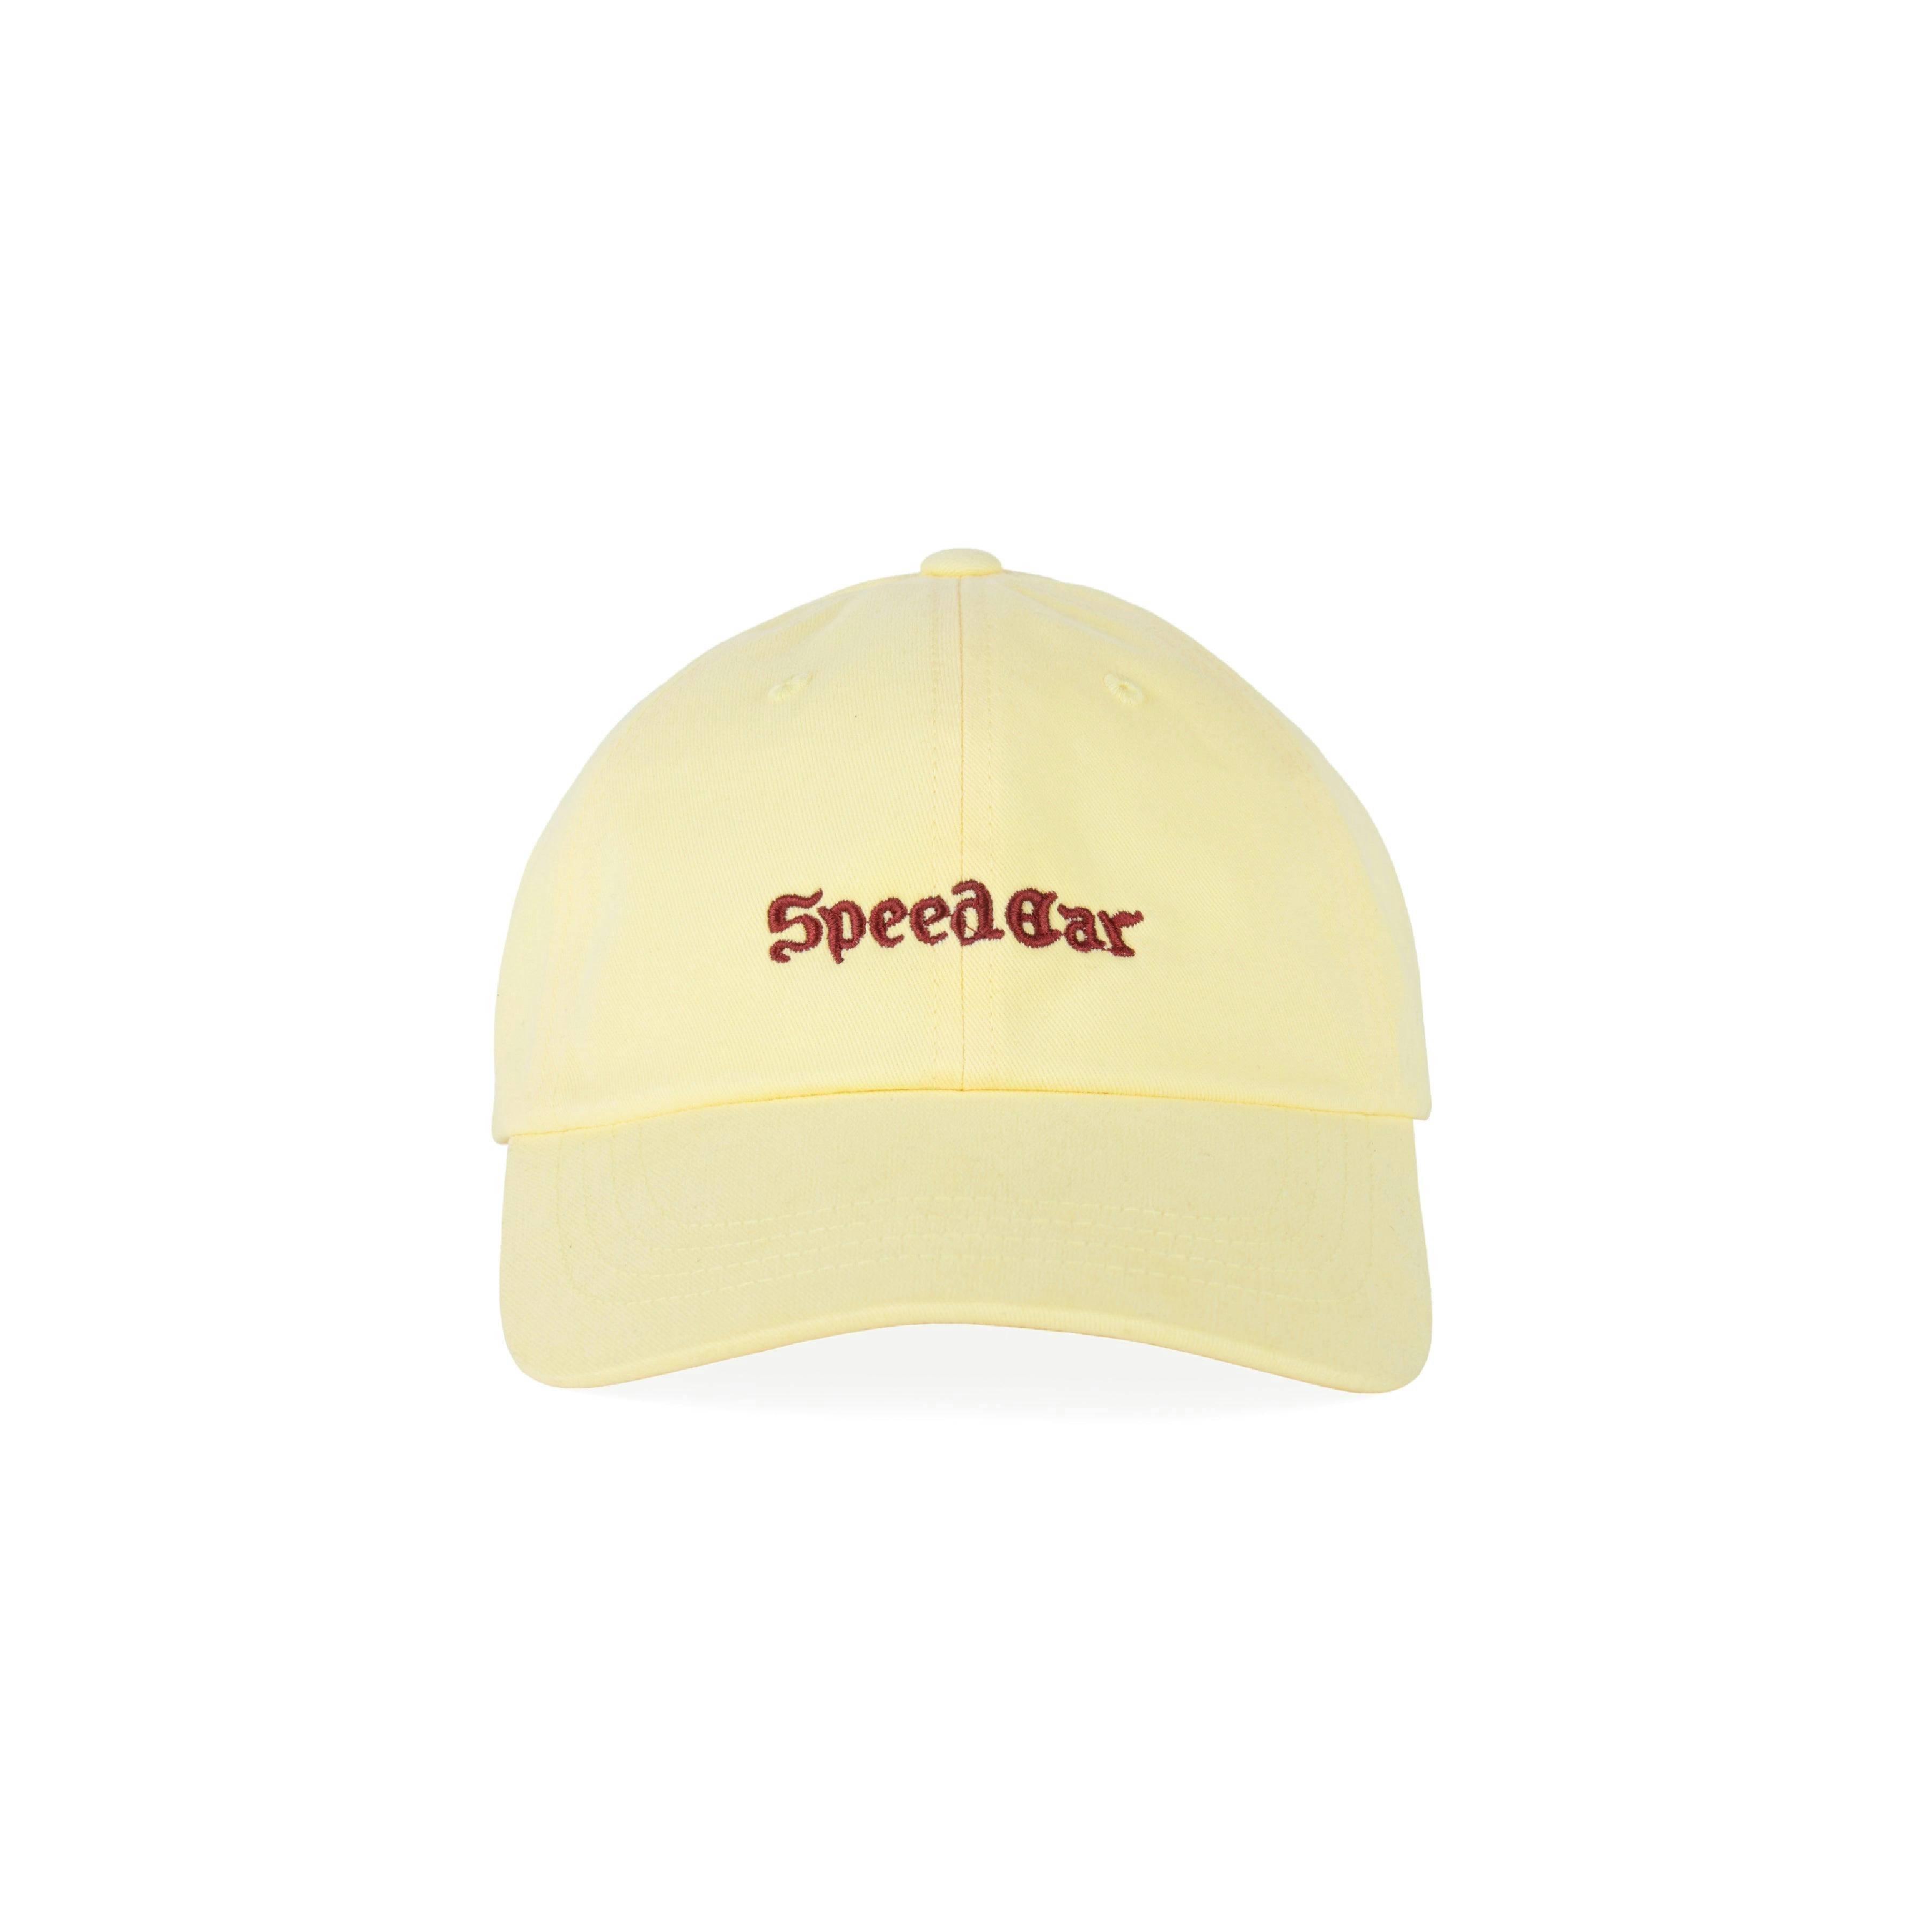 SpeedCar yellow 6 panel cap = 1 of 7